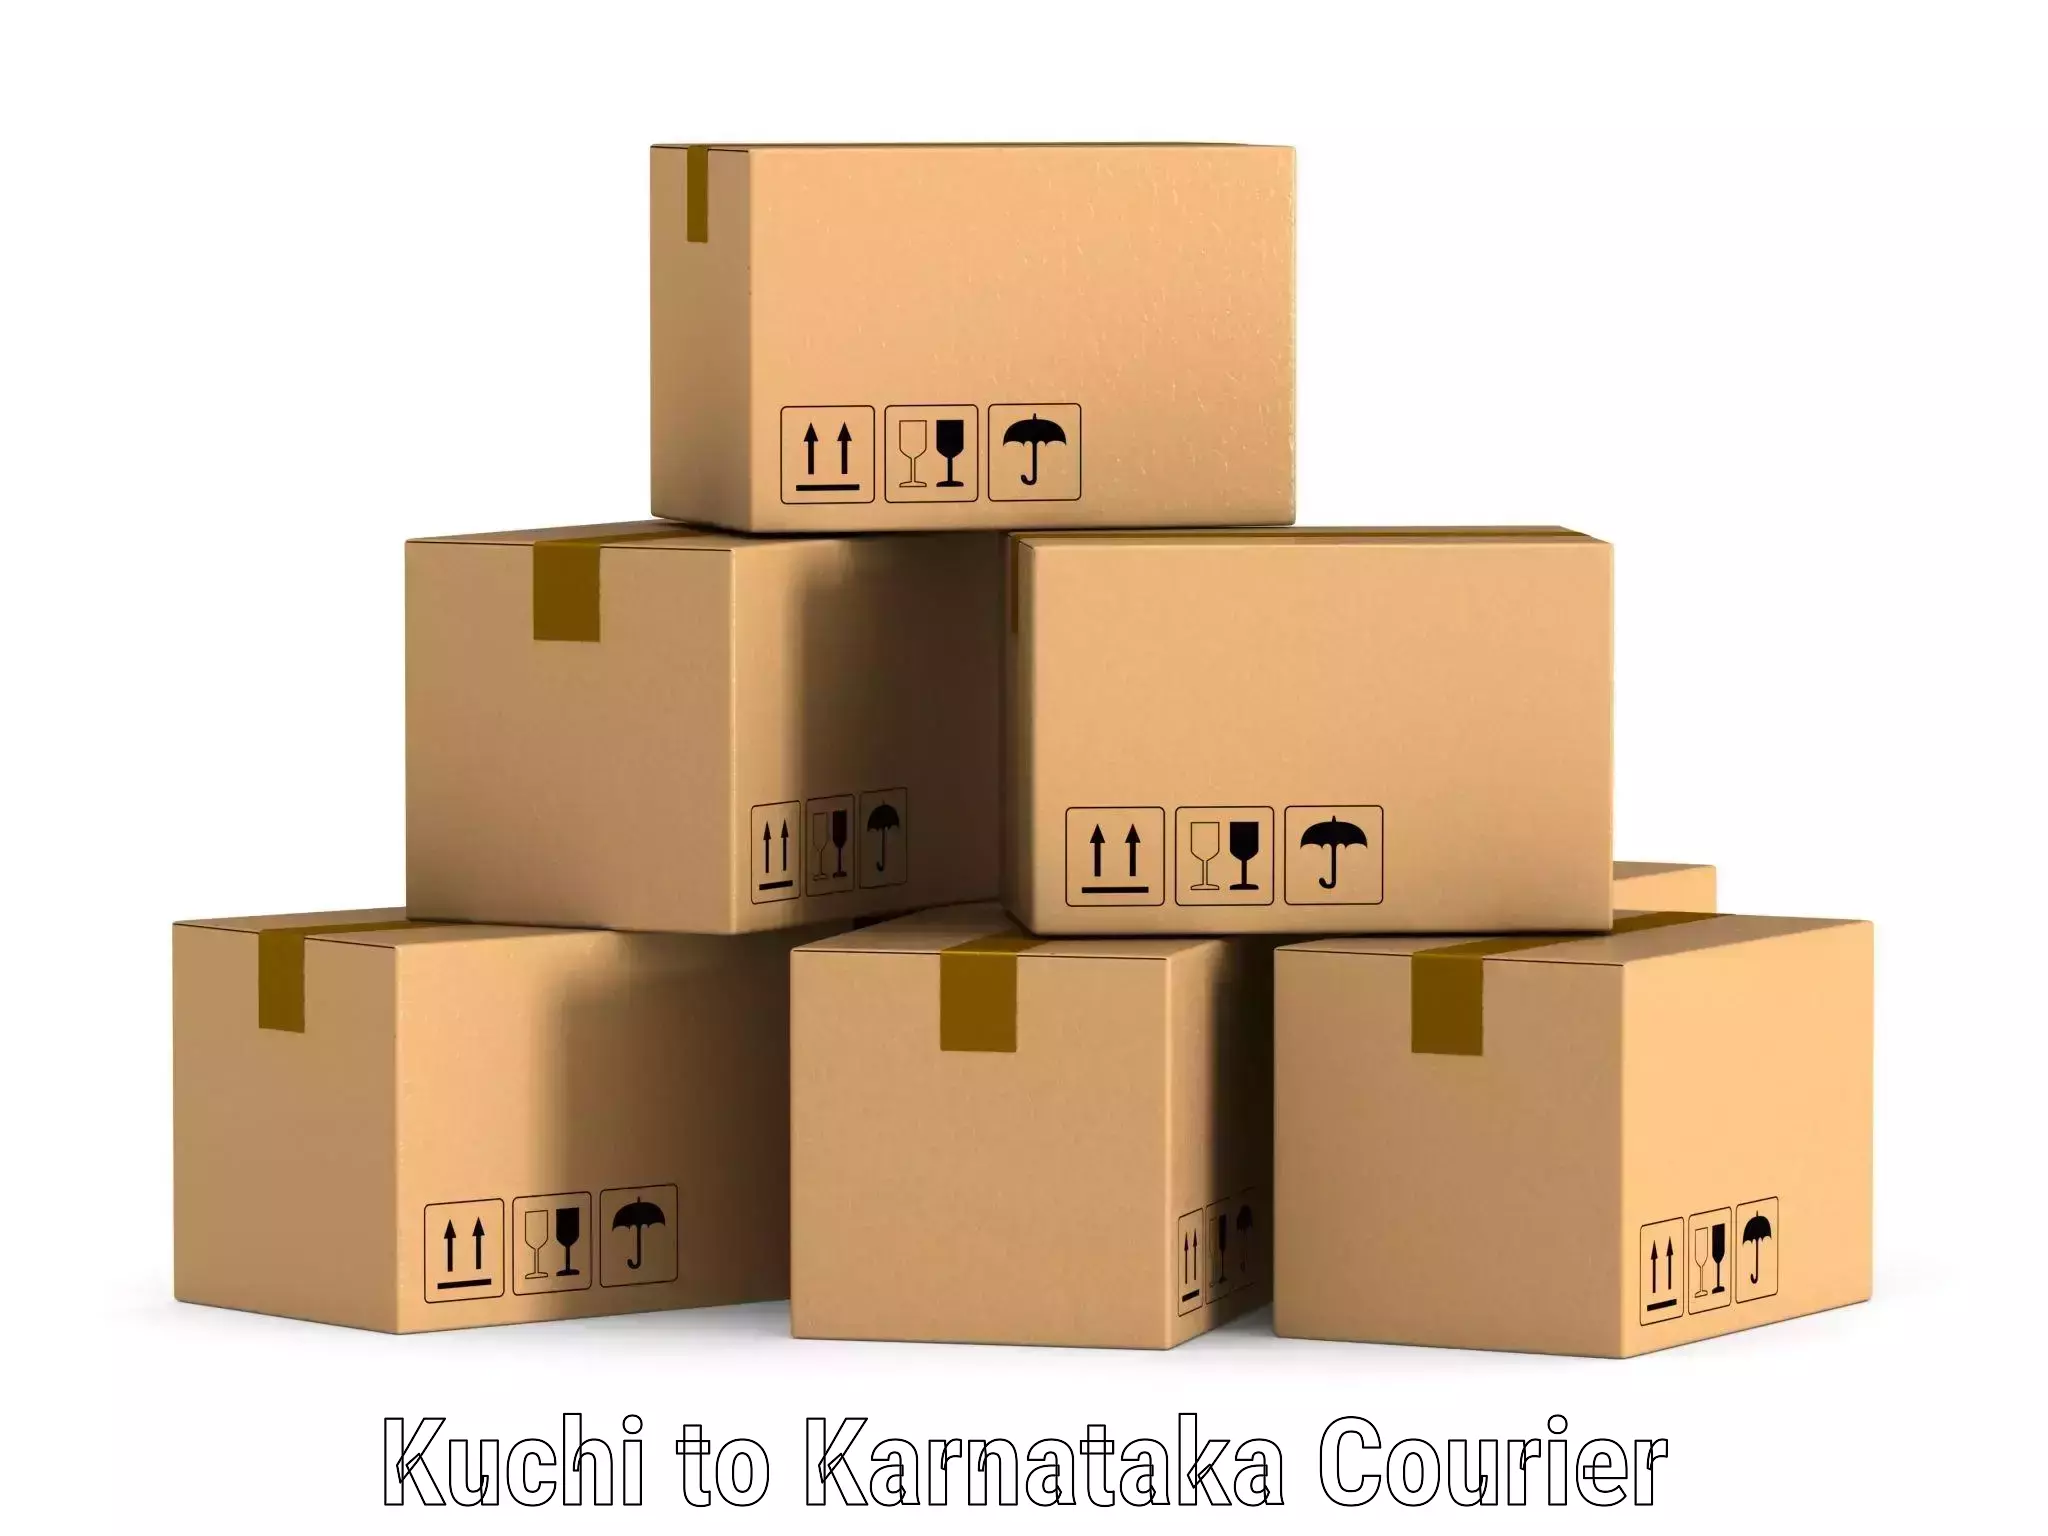 Fragile item shipping Kuchi to Yenepoya Mangalore